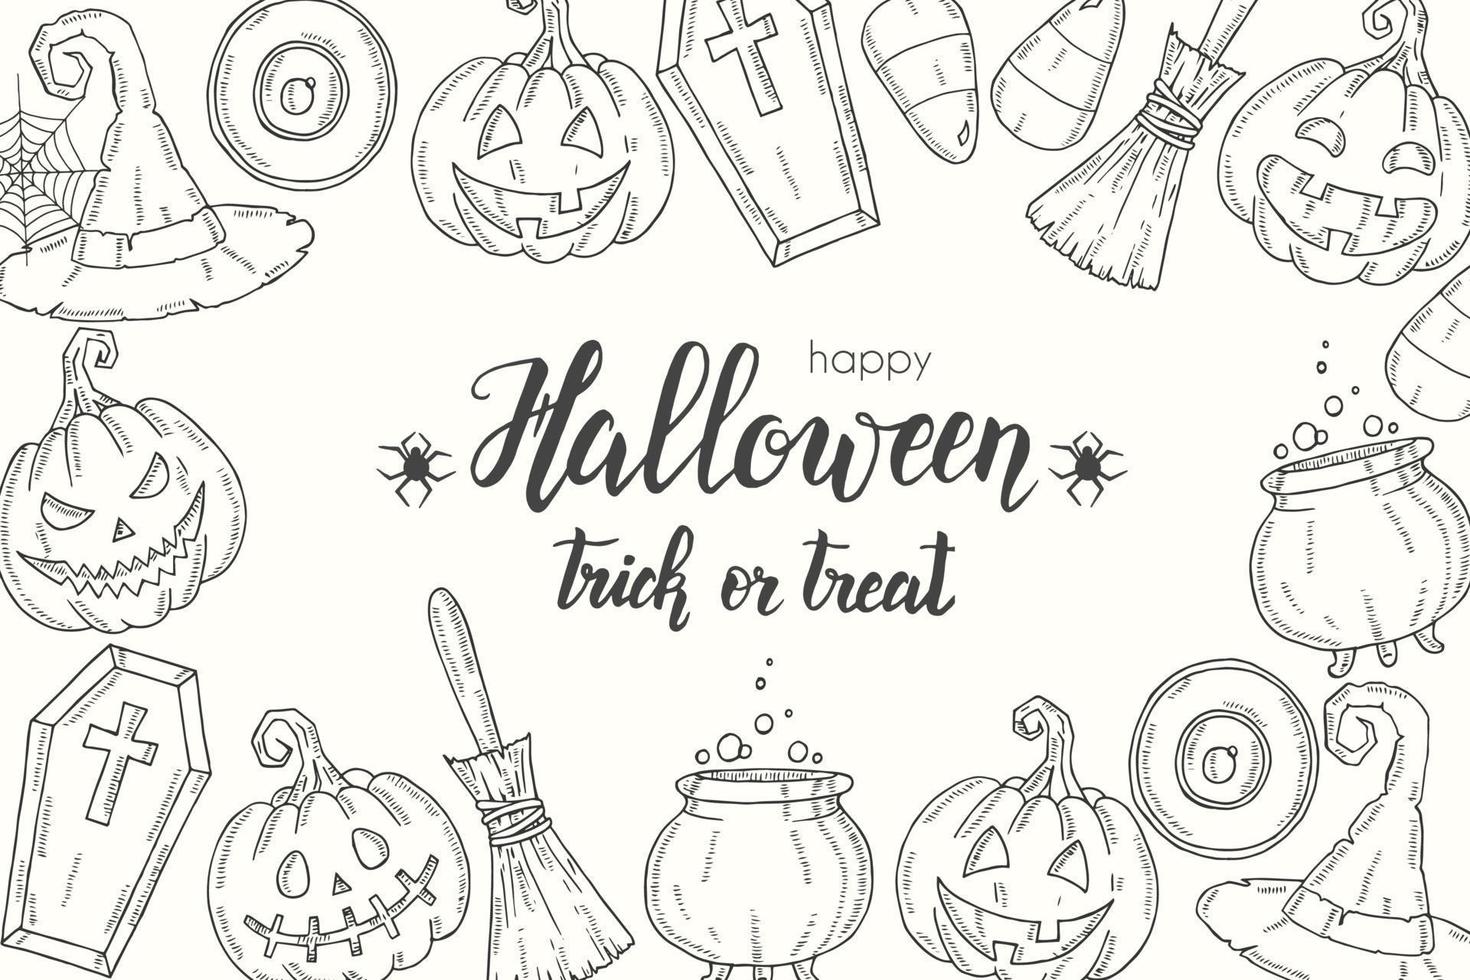 affiche d'halloween avec citrouille dessinée à la main, balai, chapeau, bonbons vecteur